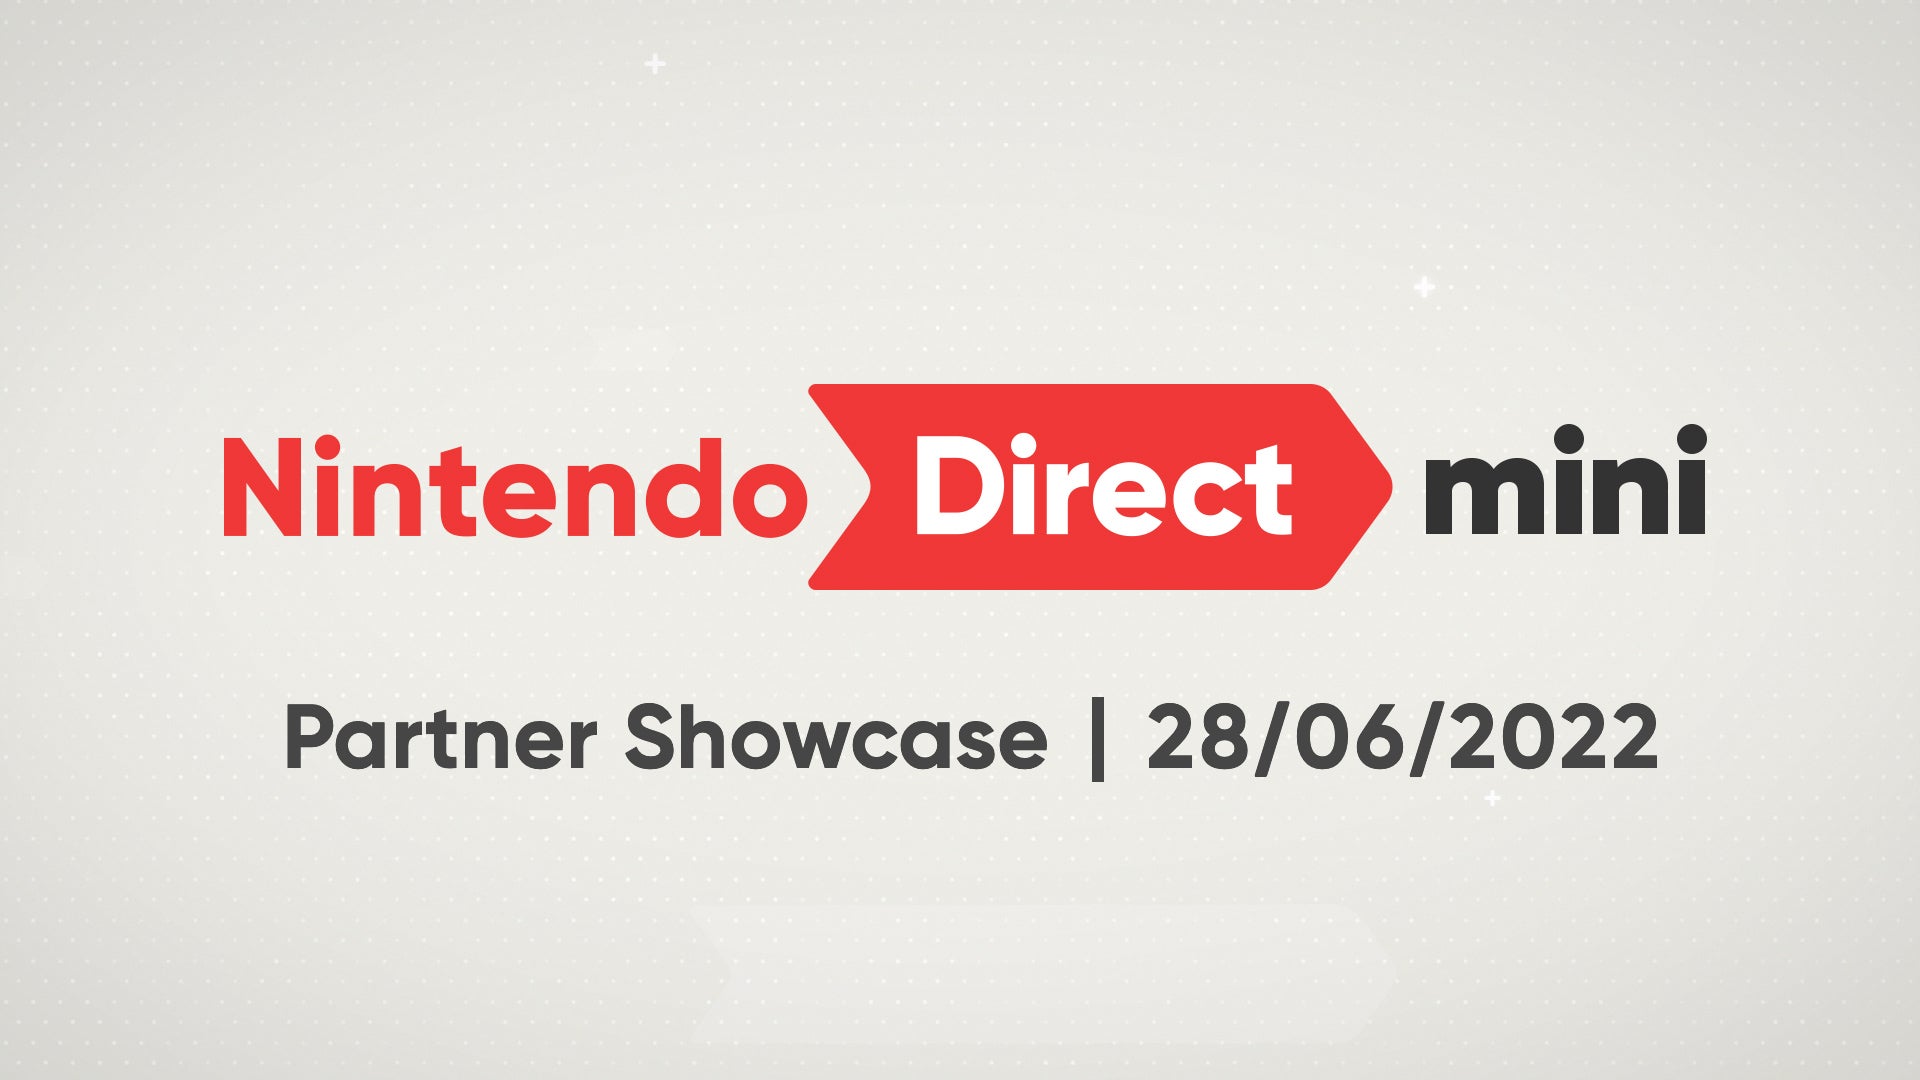 Imagen para Anunciado un Nintendo Direct Mini: Partner Showcase para mañana 28 de junio